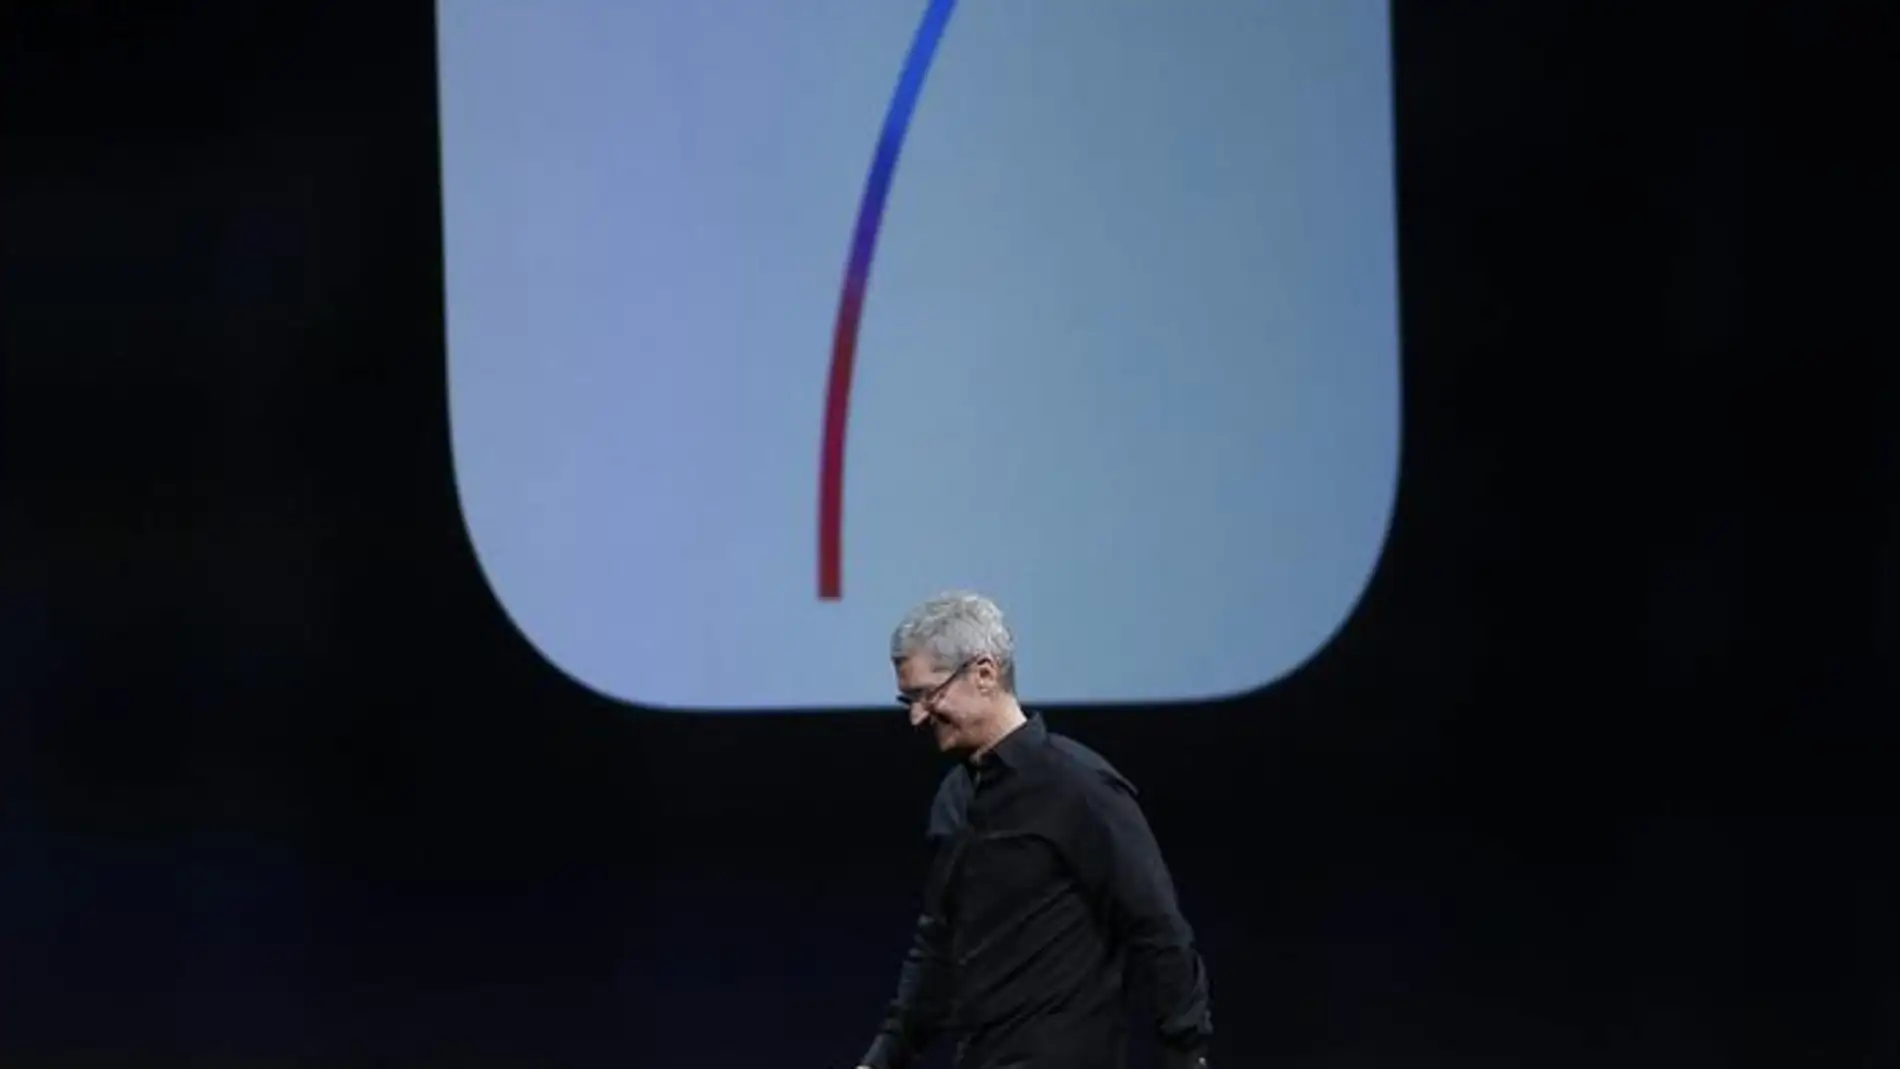  El director ejecutivo de Apple, Tim Cook, presenta el nuevo iOS 7 